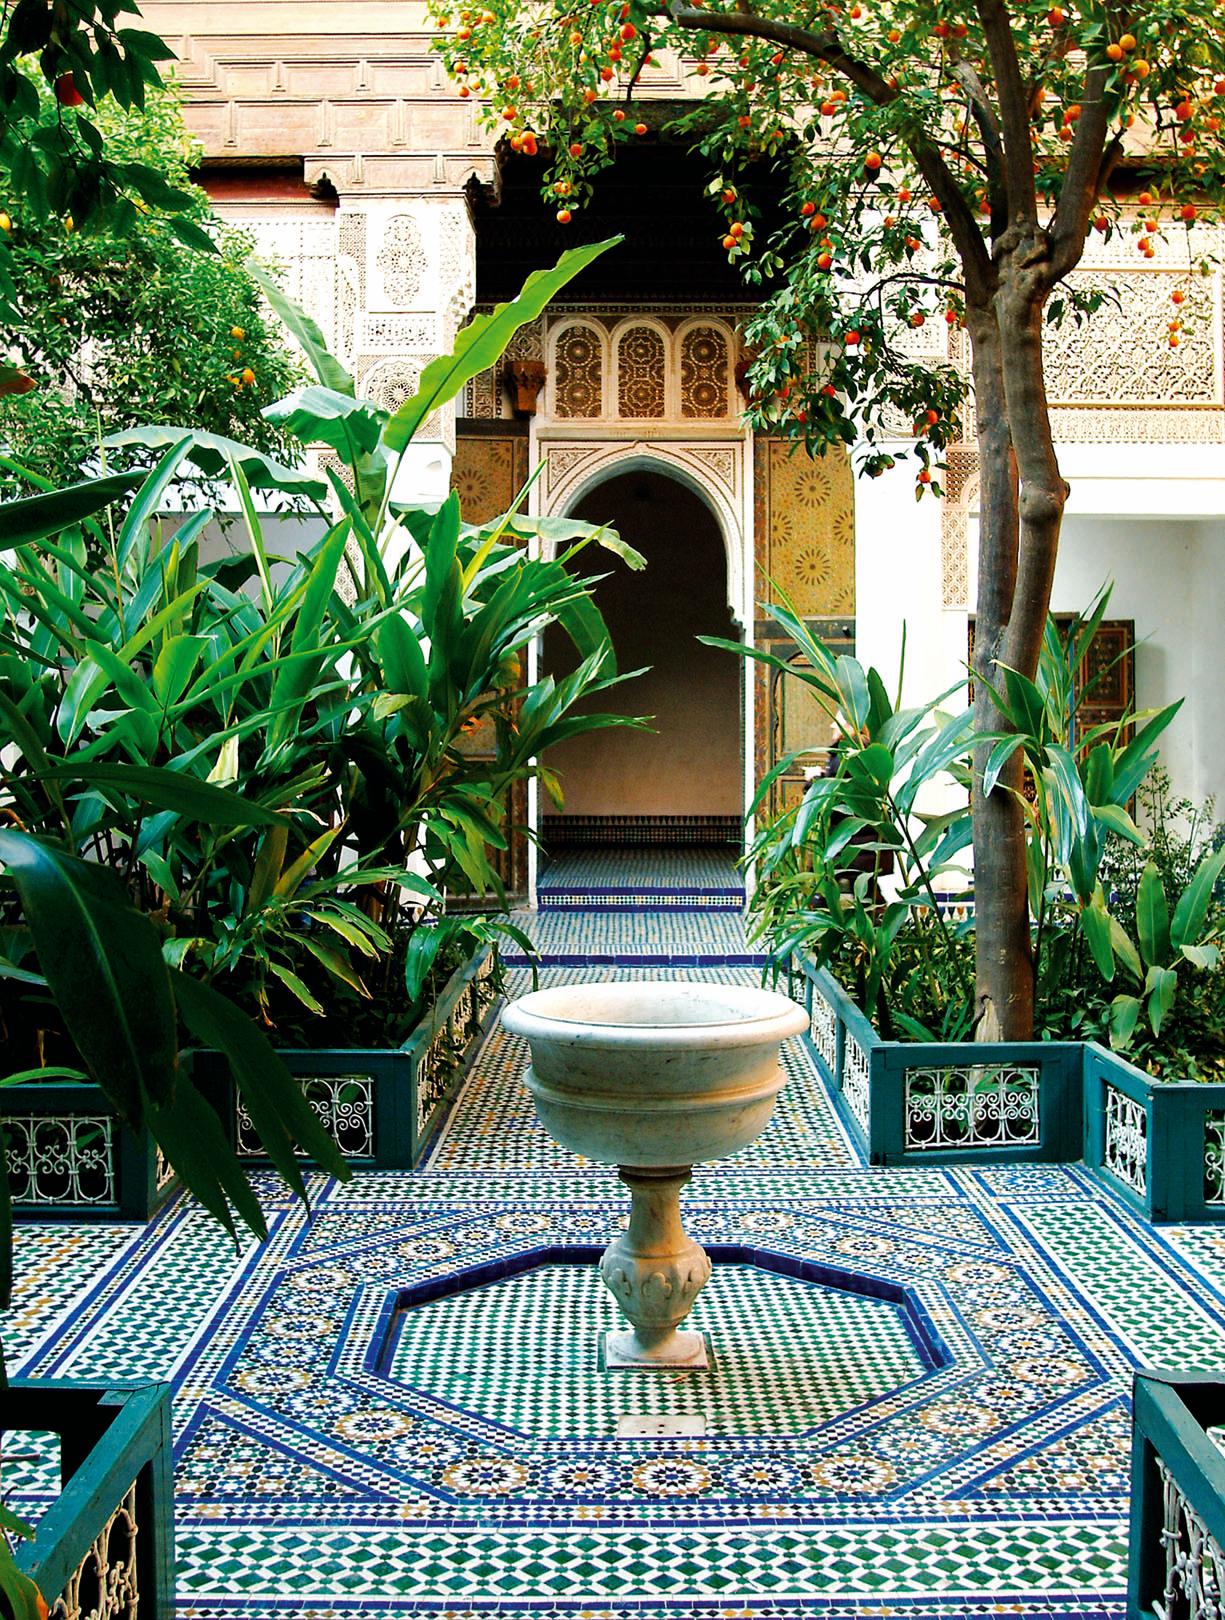   Le jardin au Maroc, un art de vivre